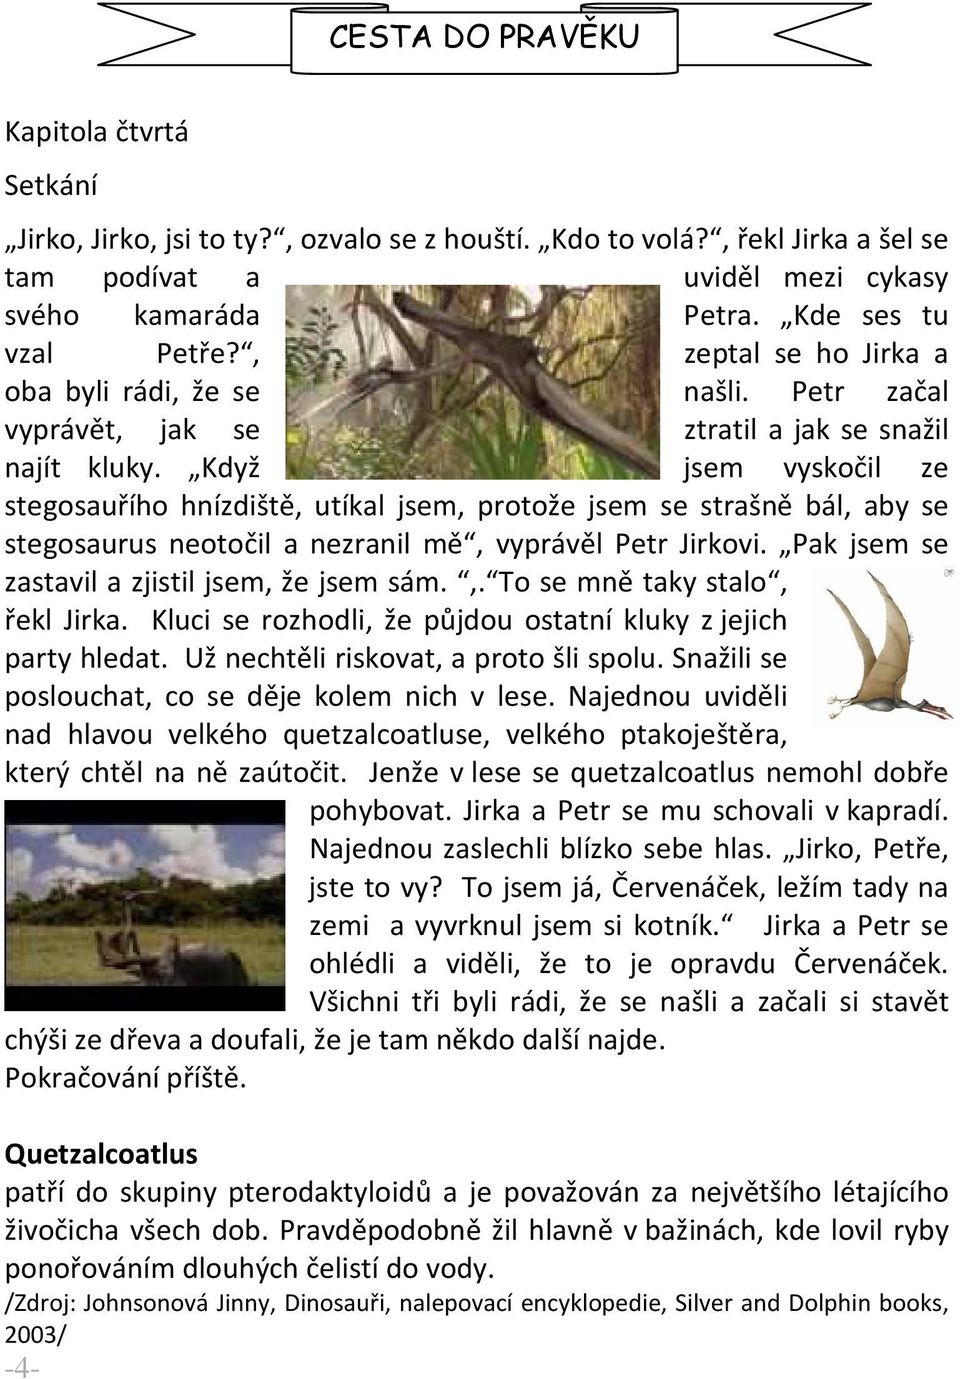 Když jsem vyskočil ze stegosauřího hnízdiště, utíkal jsem, protože jsem se strašně bál, aby se stegosaurus neotočil a nezranil mě, vyprávěl Petr Jirkovi.